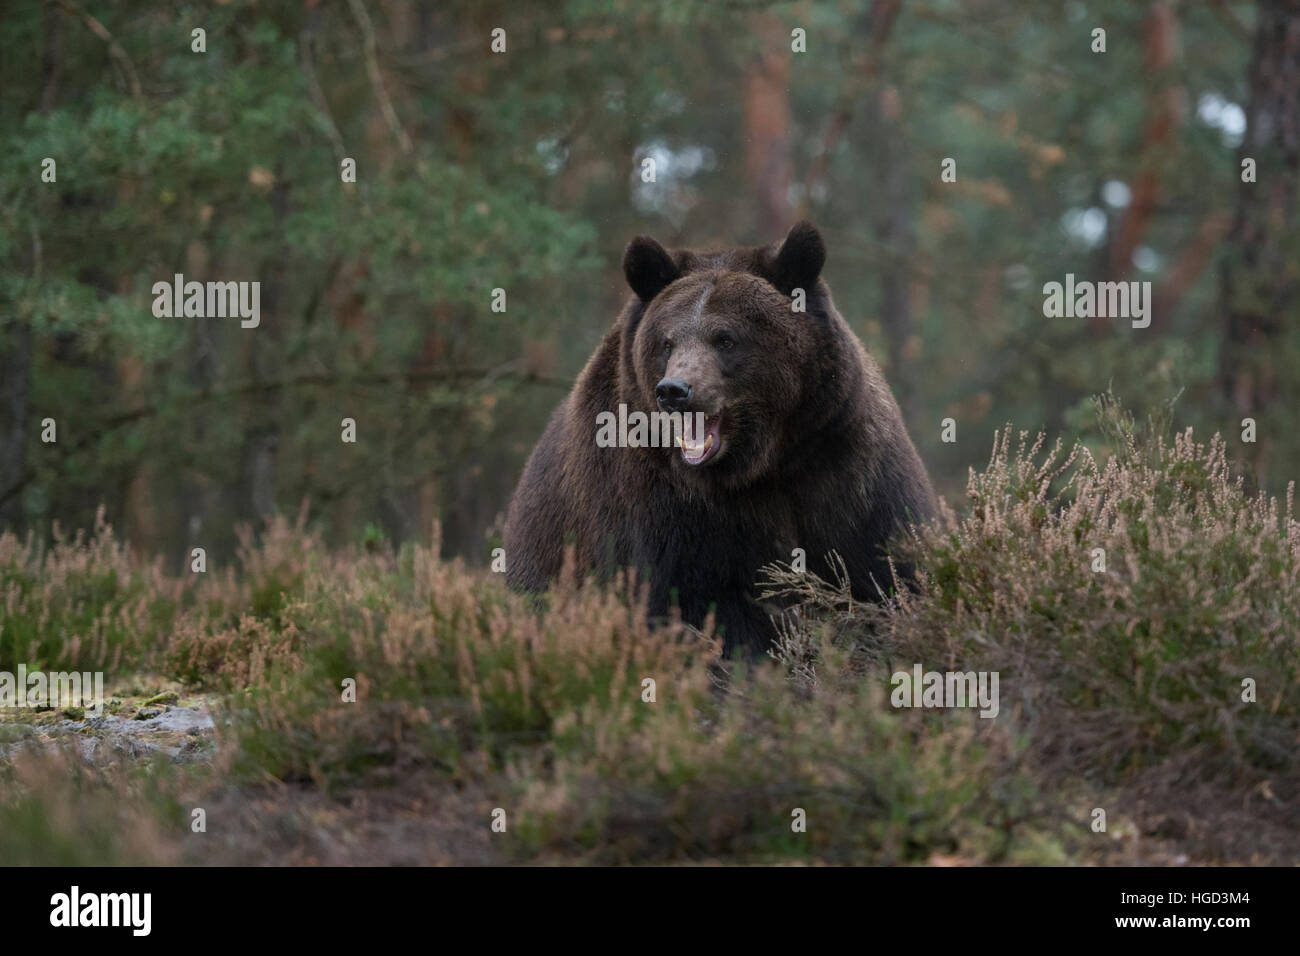 Europäische Braunbär (Ursus arctos) in das Unterholz eines Waldes, scheint genervt, aggressiv sein, seine Zähne zu zeigen. Stockfoto